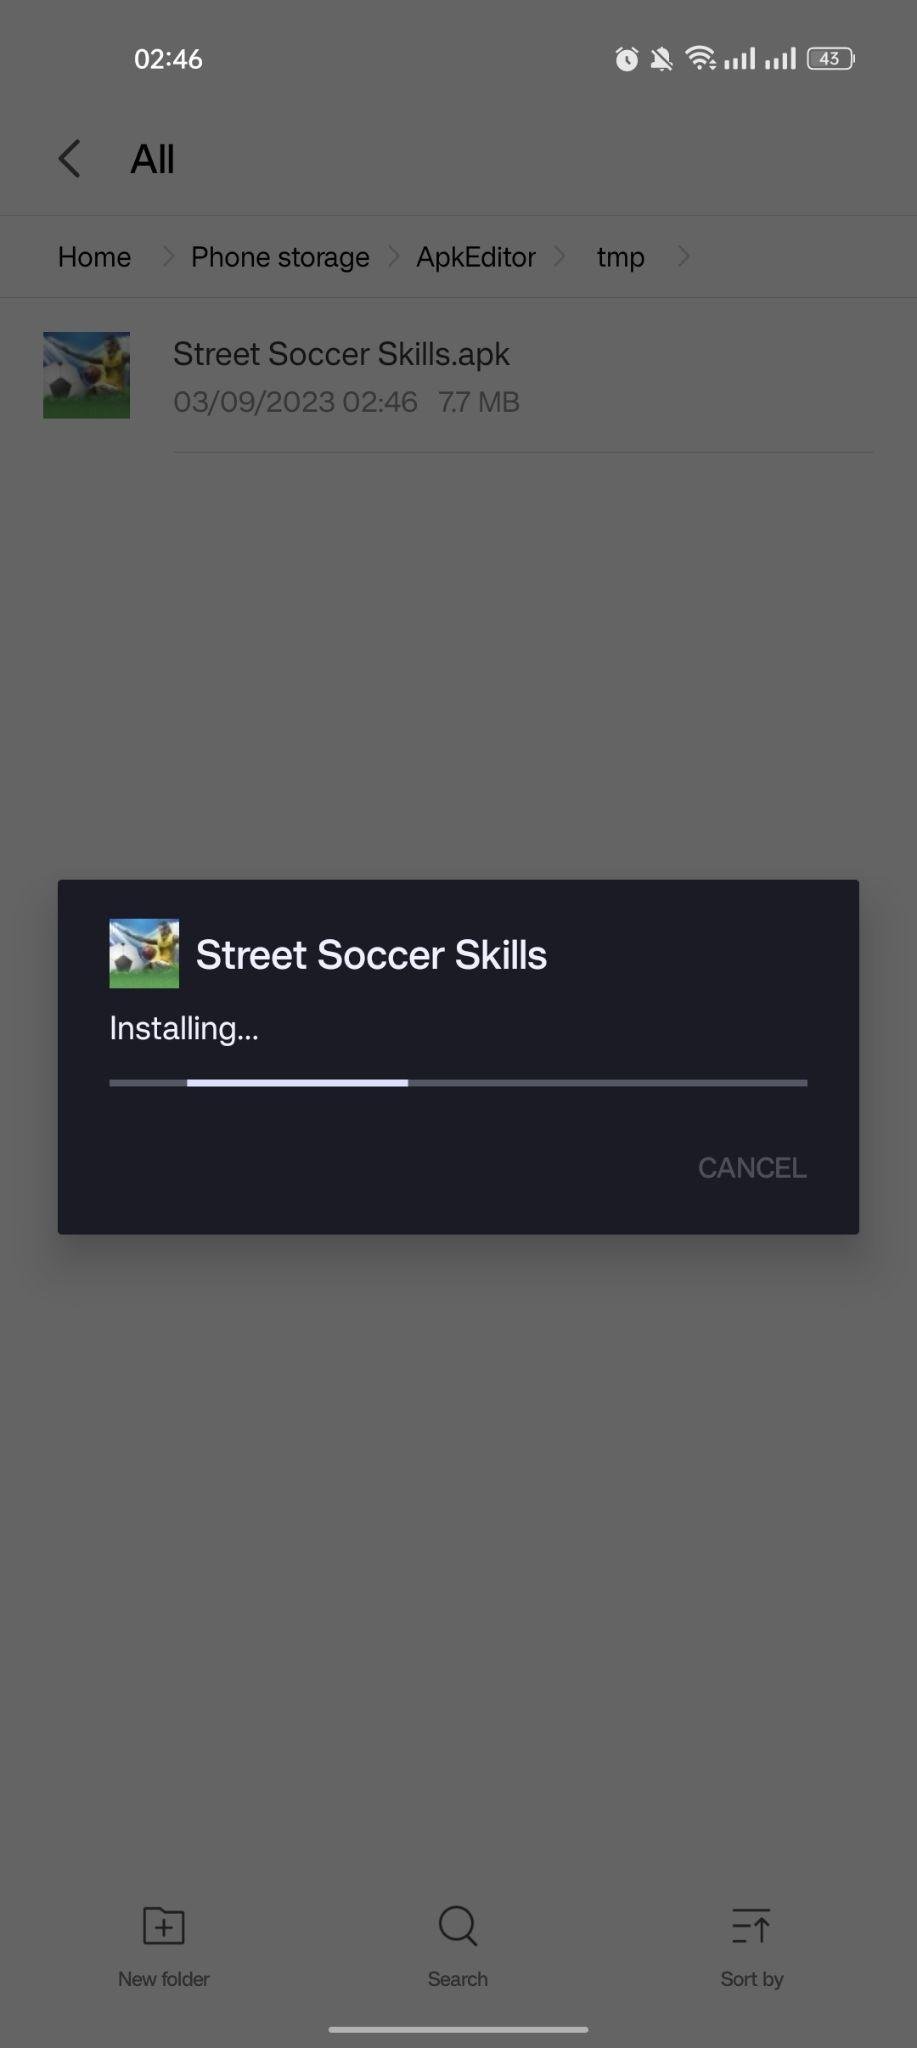 Street Soccer Skills apk installing